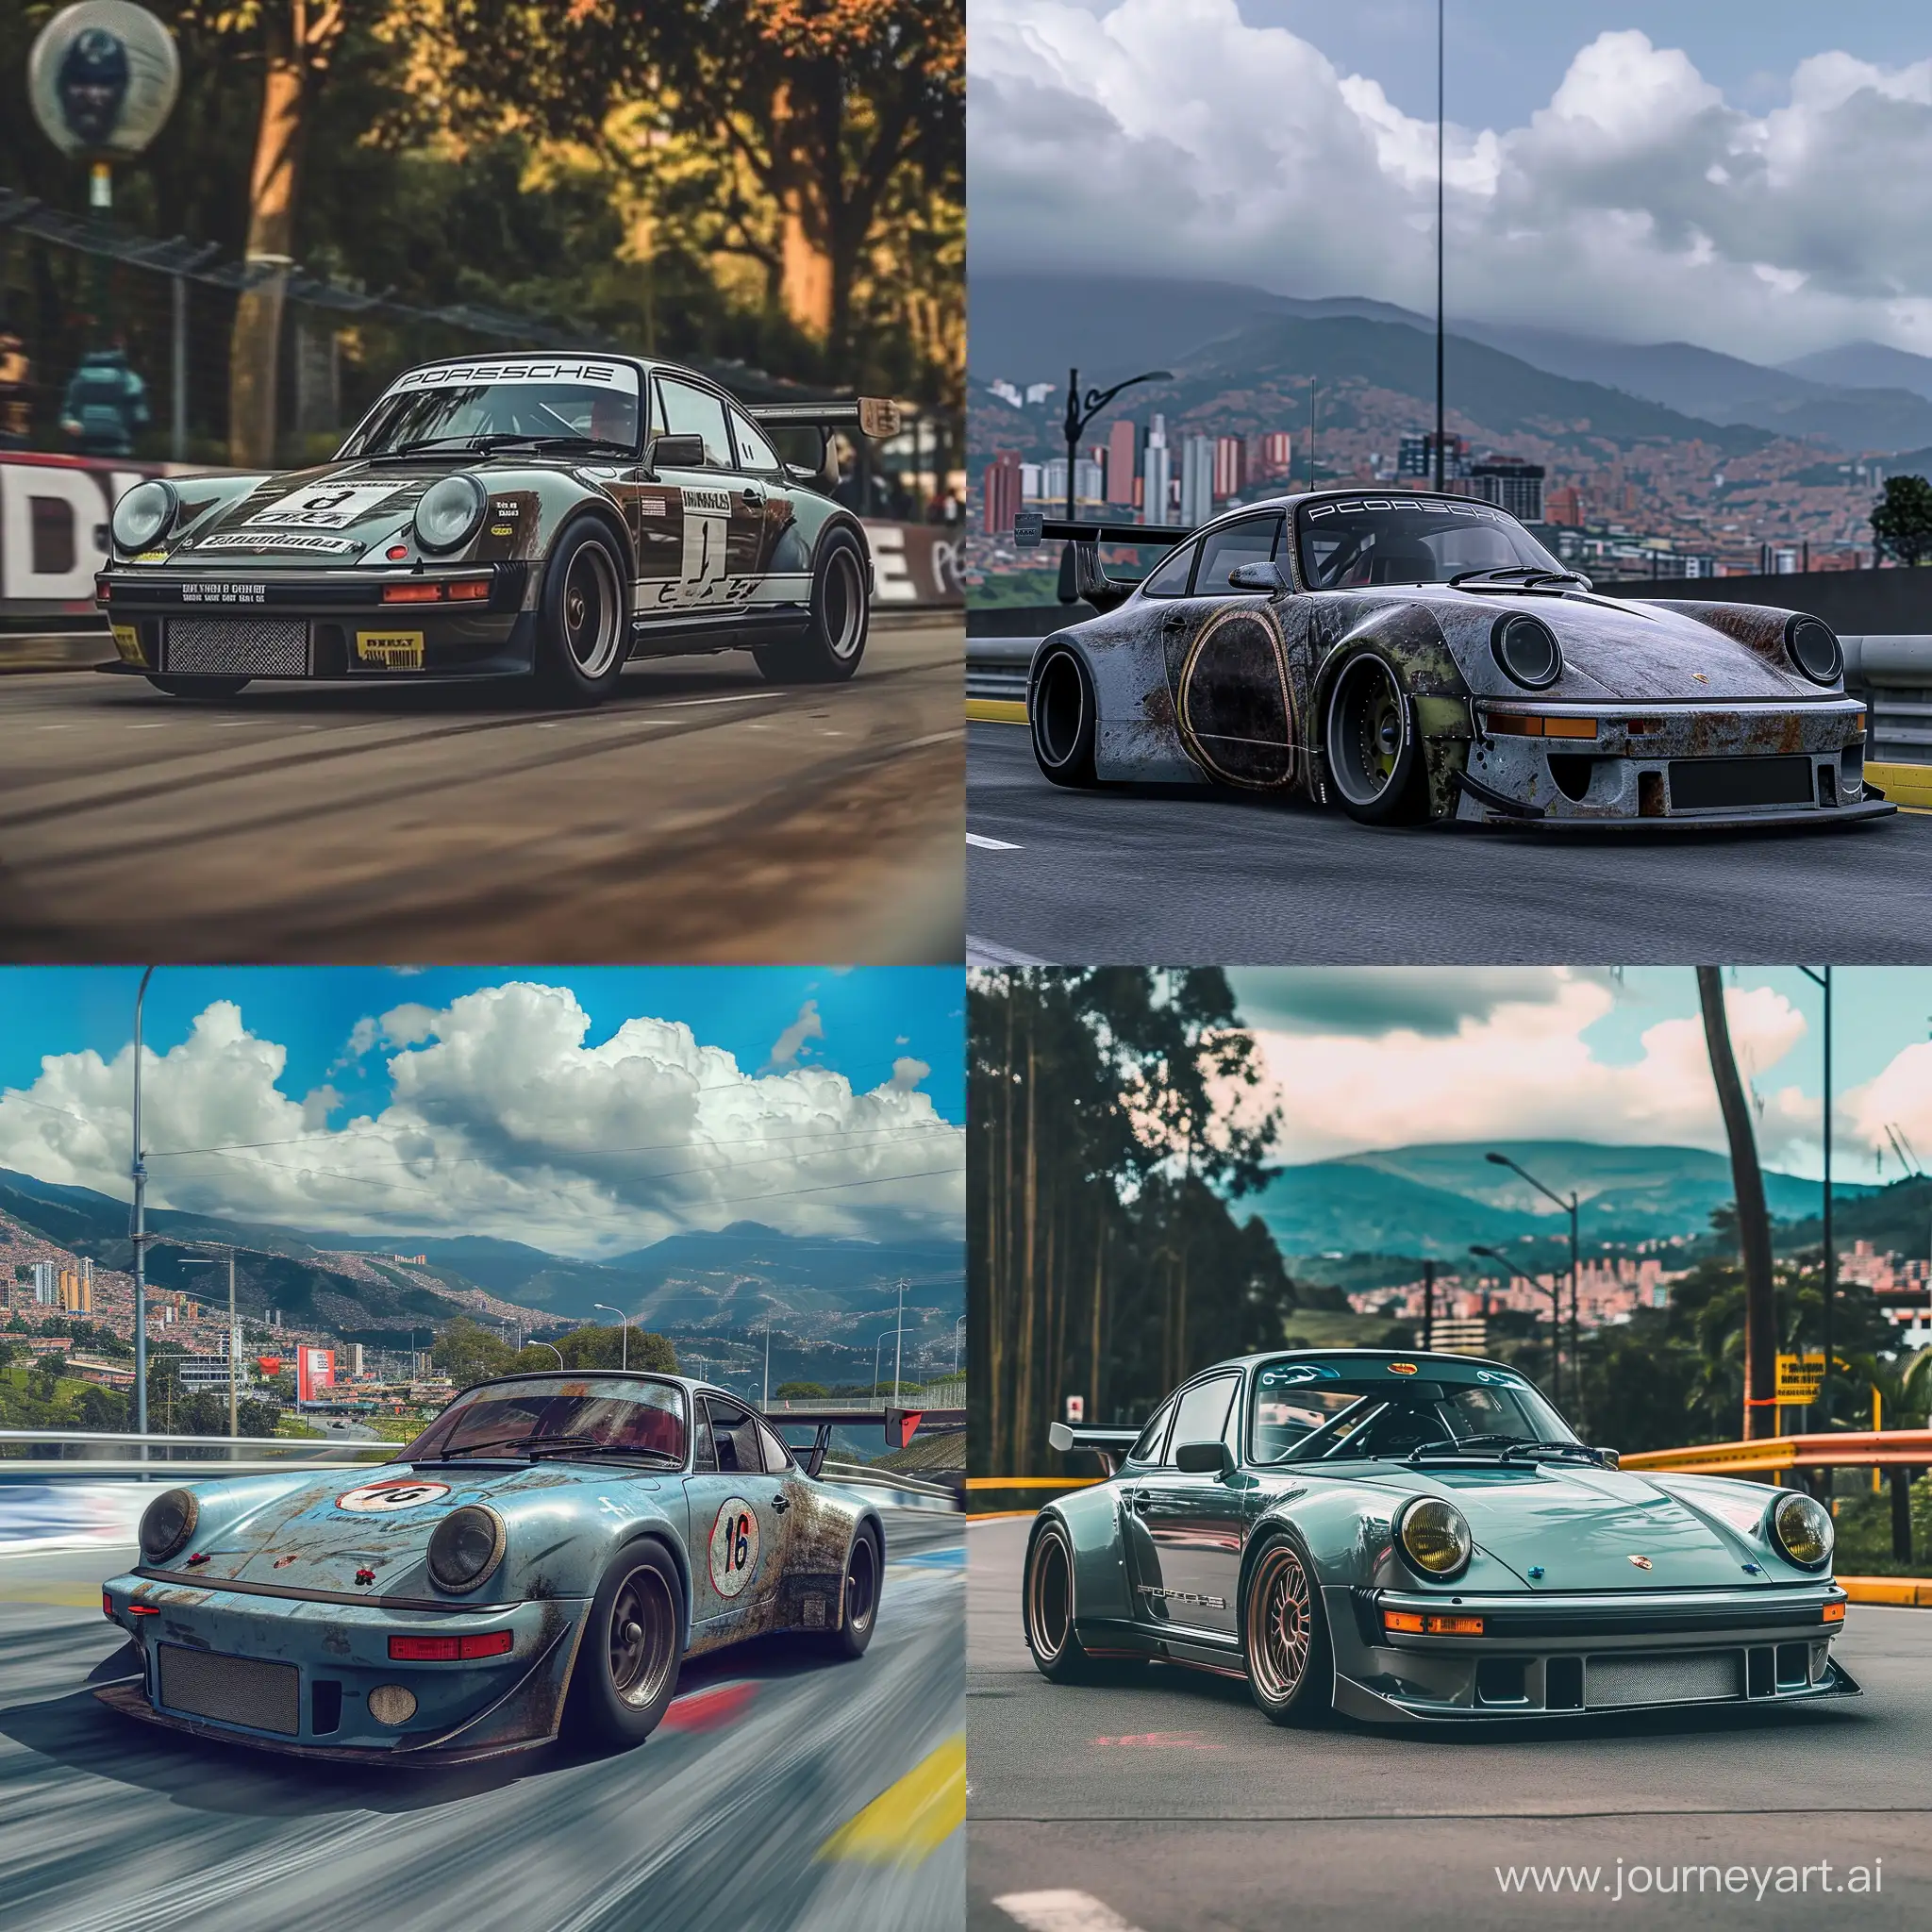 Pablo-Escobar-Racing-a-Porsche-911-RSR-in-Medelln